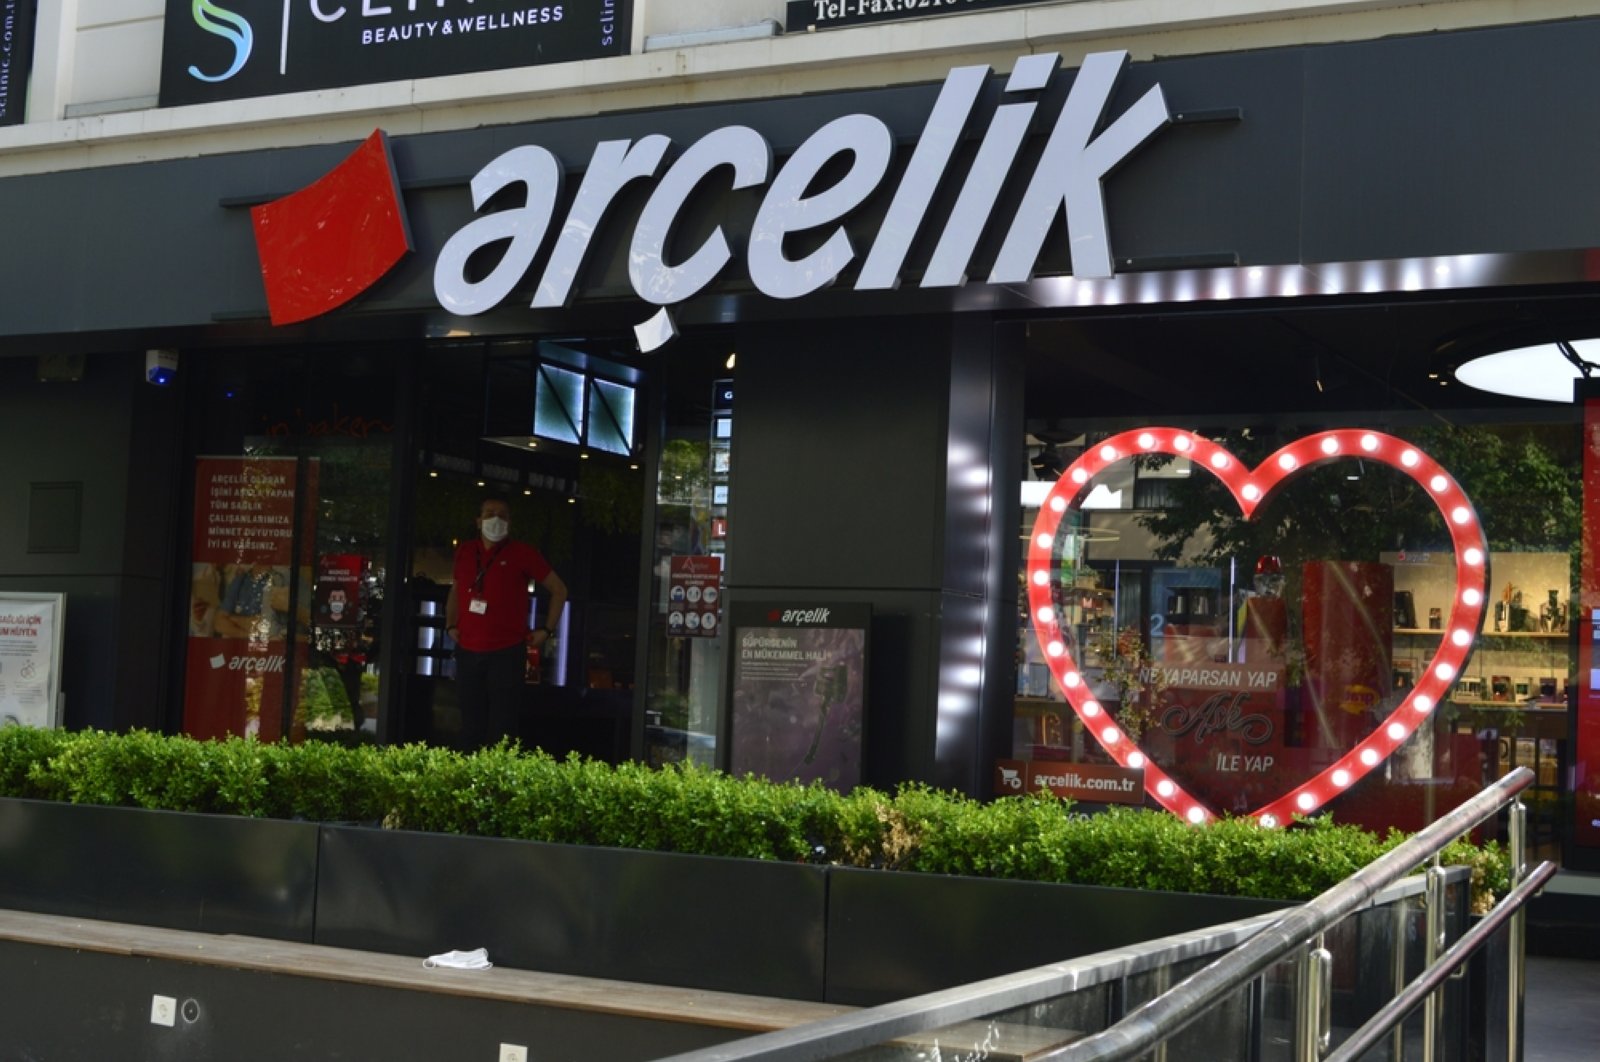 Arçelik Turki mengakuisisi merek Barat Indesit dan Whirlpool